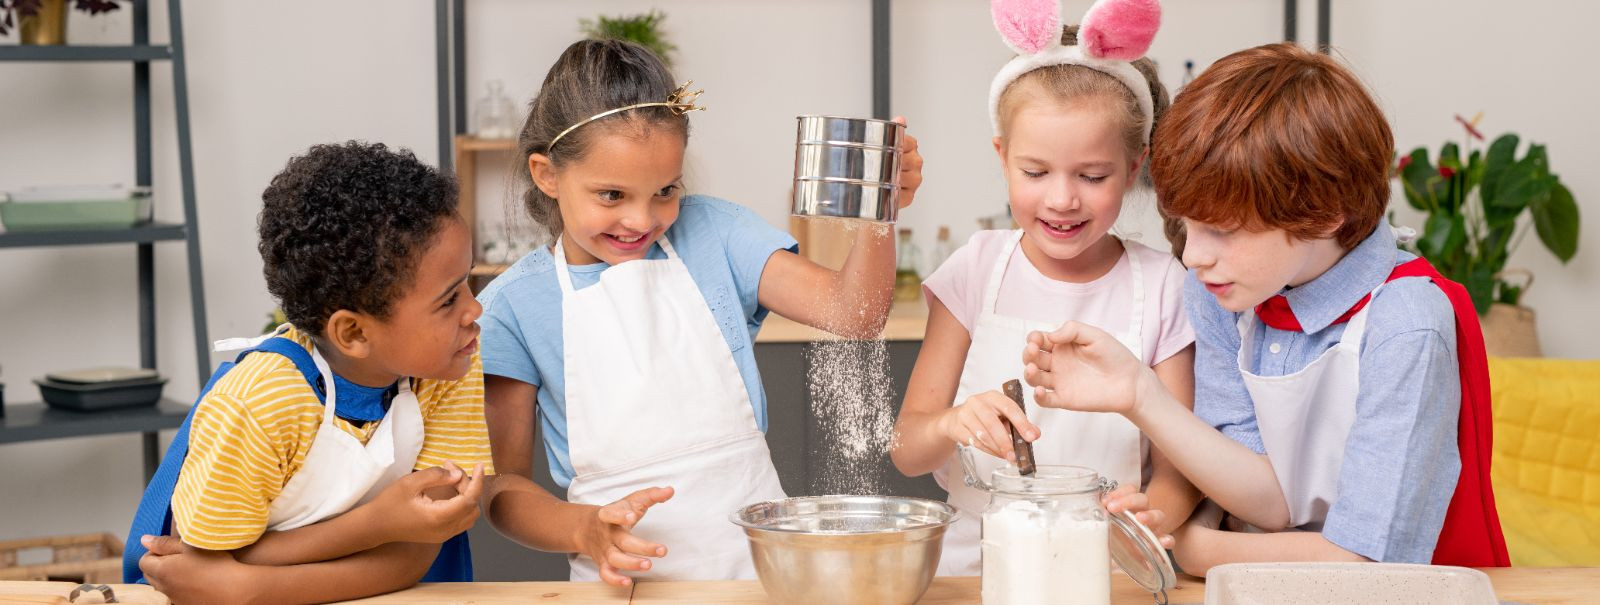 Lastega köögis tegelemine ei ole mitte ainult lõbus tegevus, vaid ka hariv kogemus, mis võib sisendada eluaegseid oskusi ja armastust kokkamise vastu. Siin on v